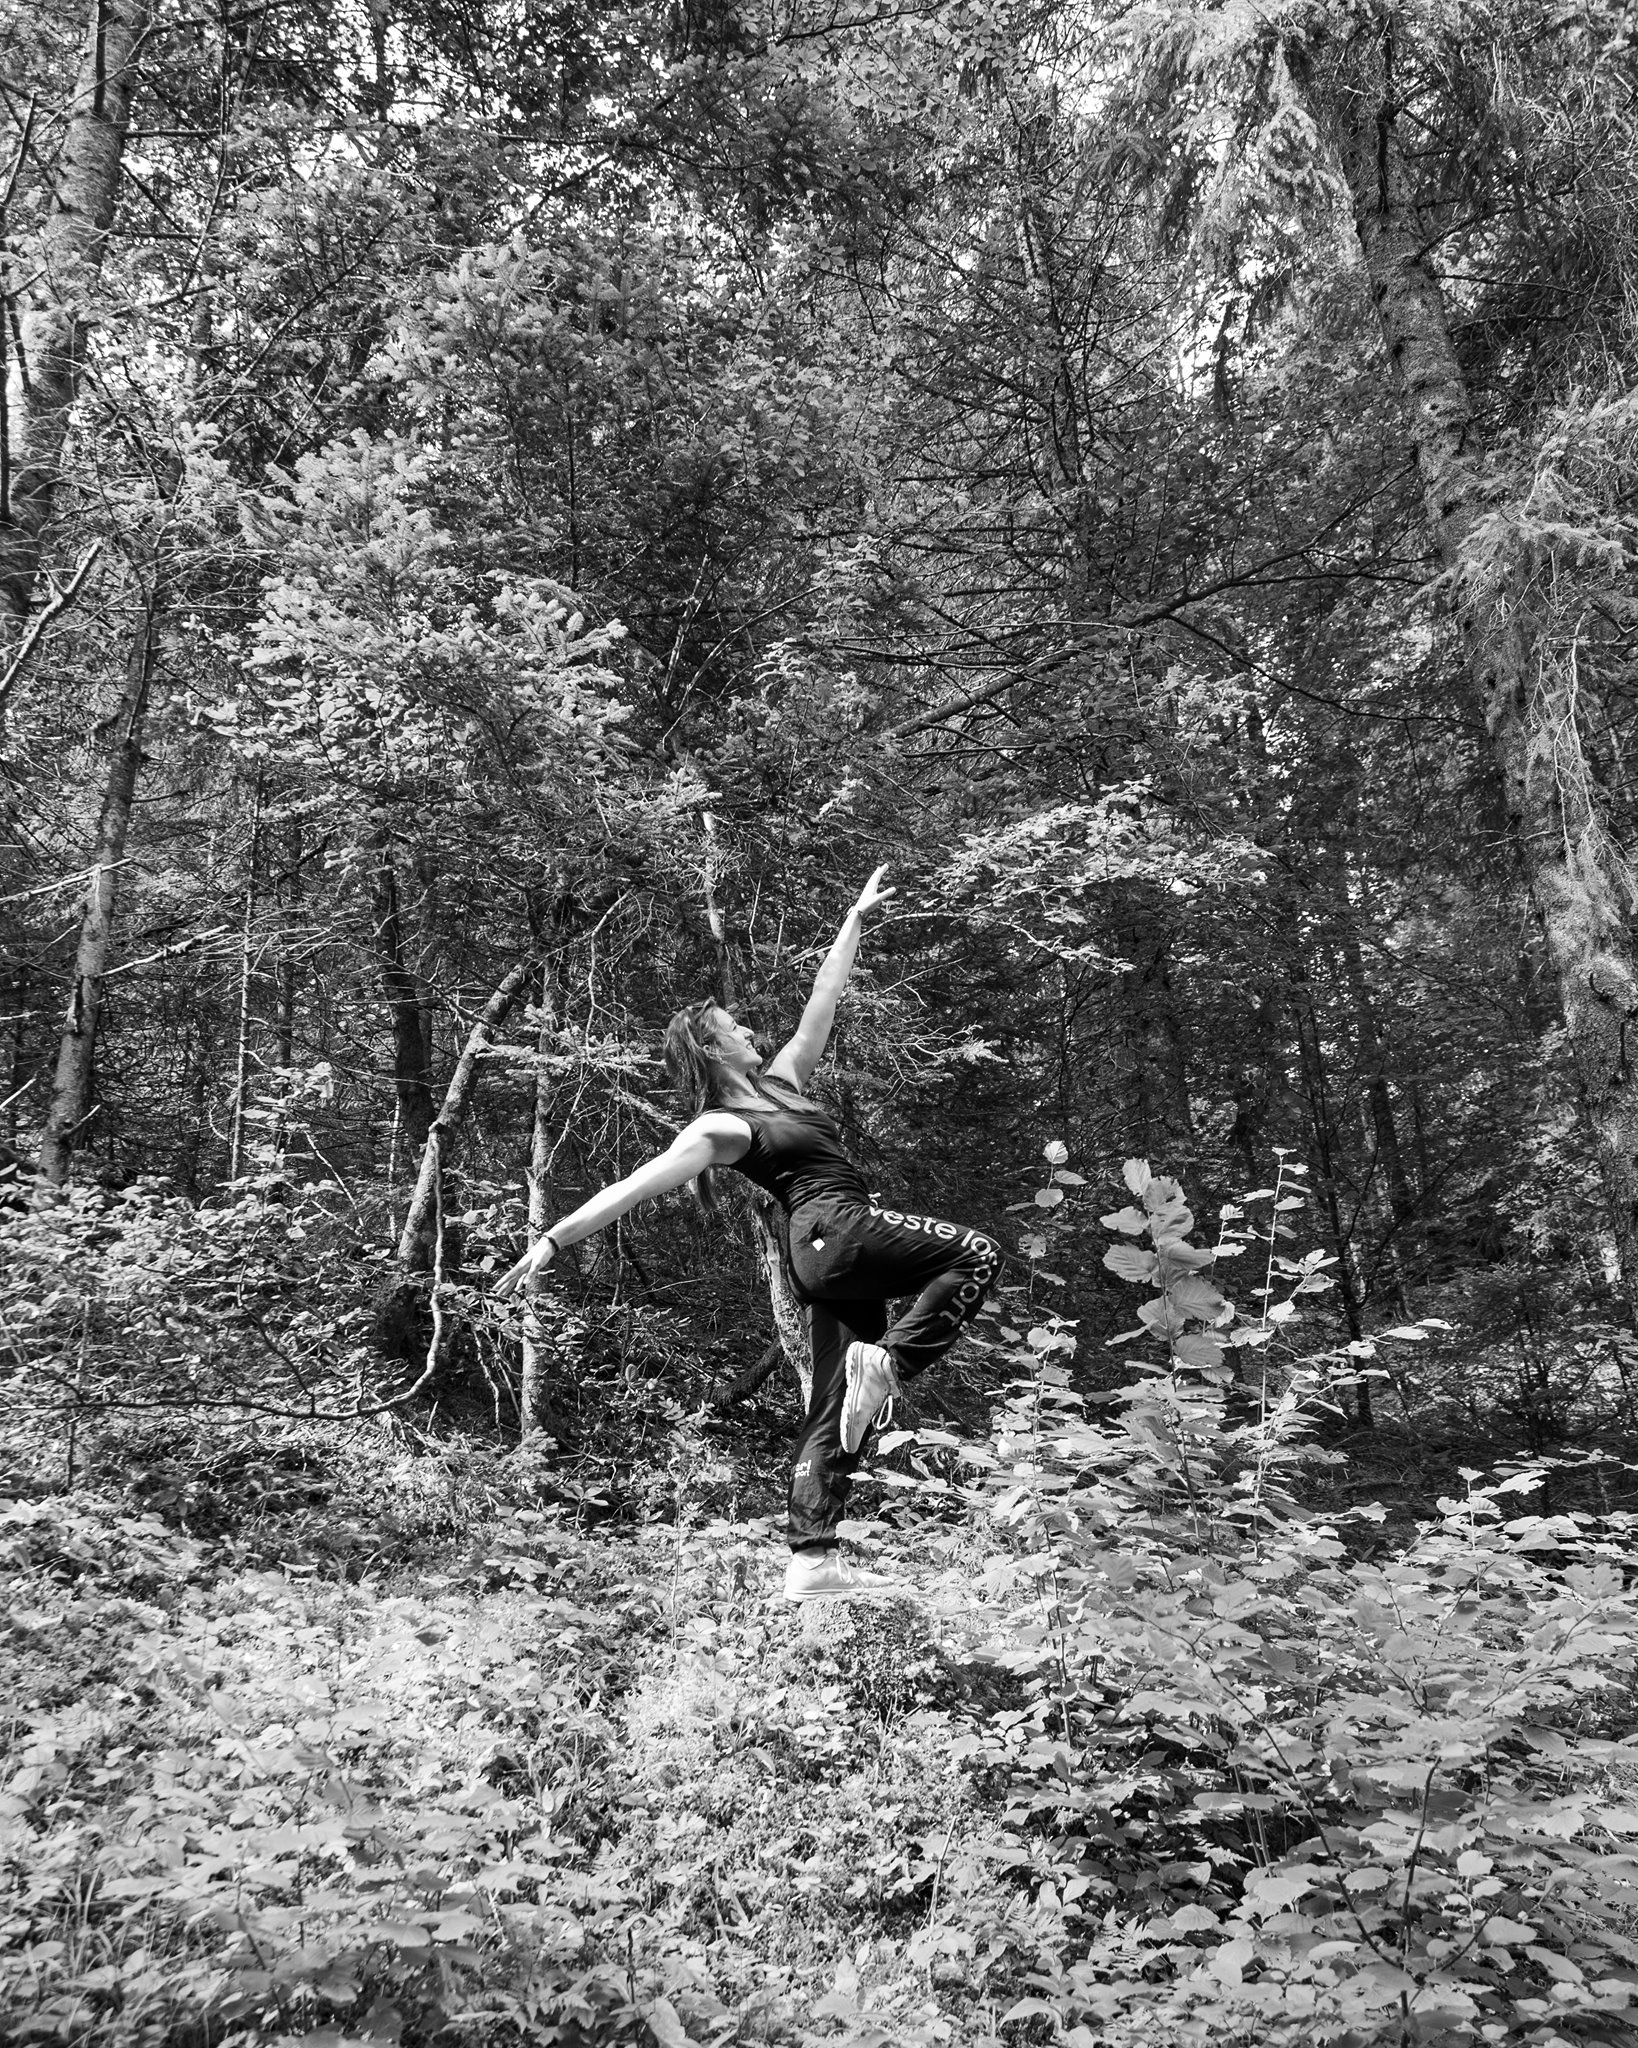 Photographie en niveau de gris de Cécile Reiter qui prend la pose en dansant au milieu d'une forêt du Jura